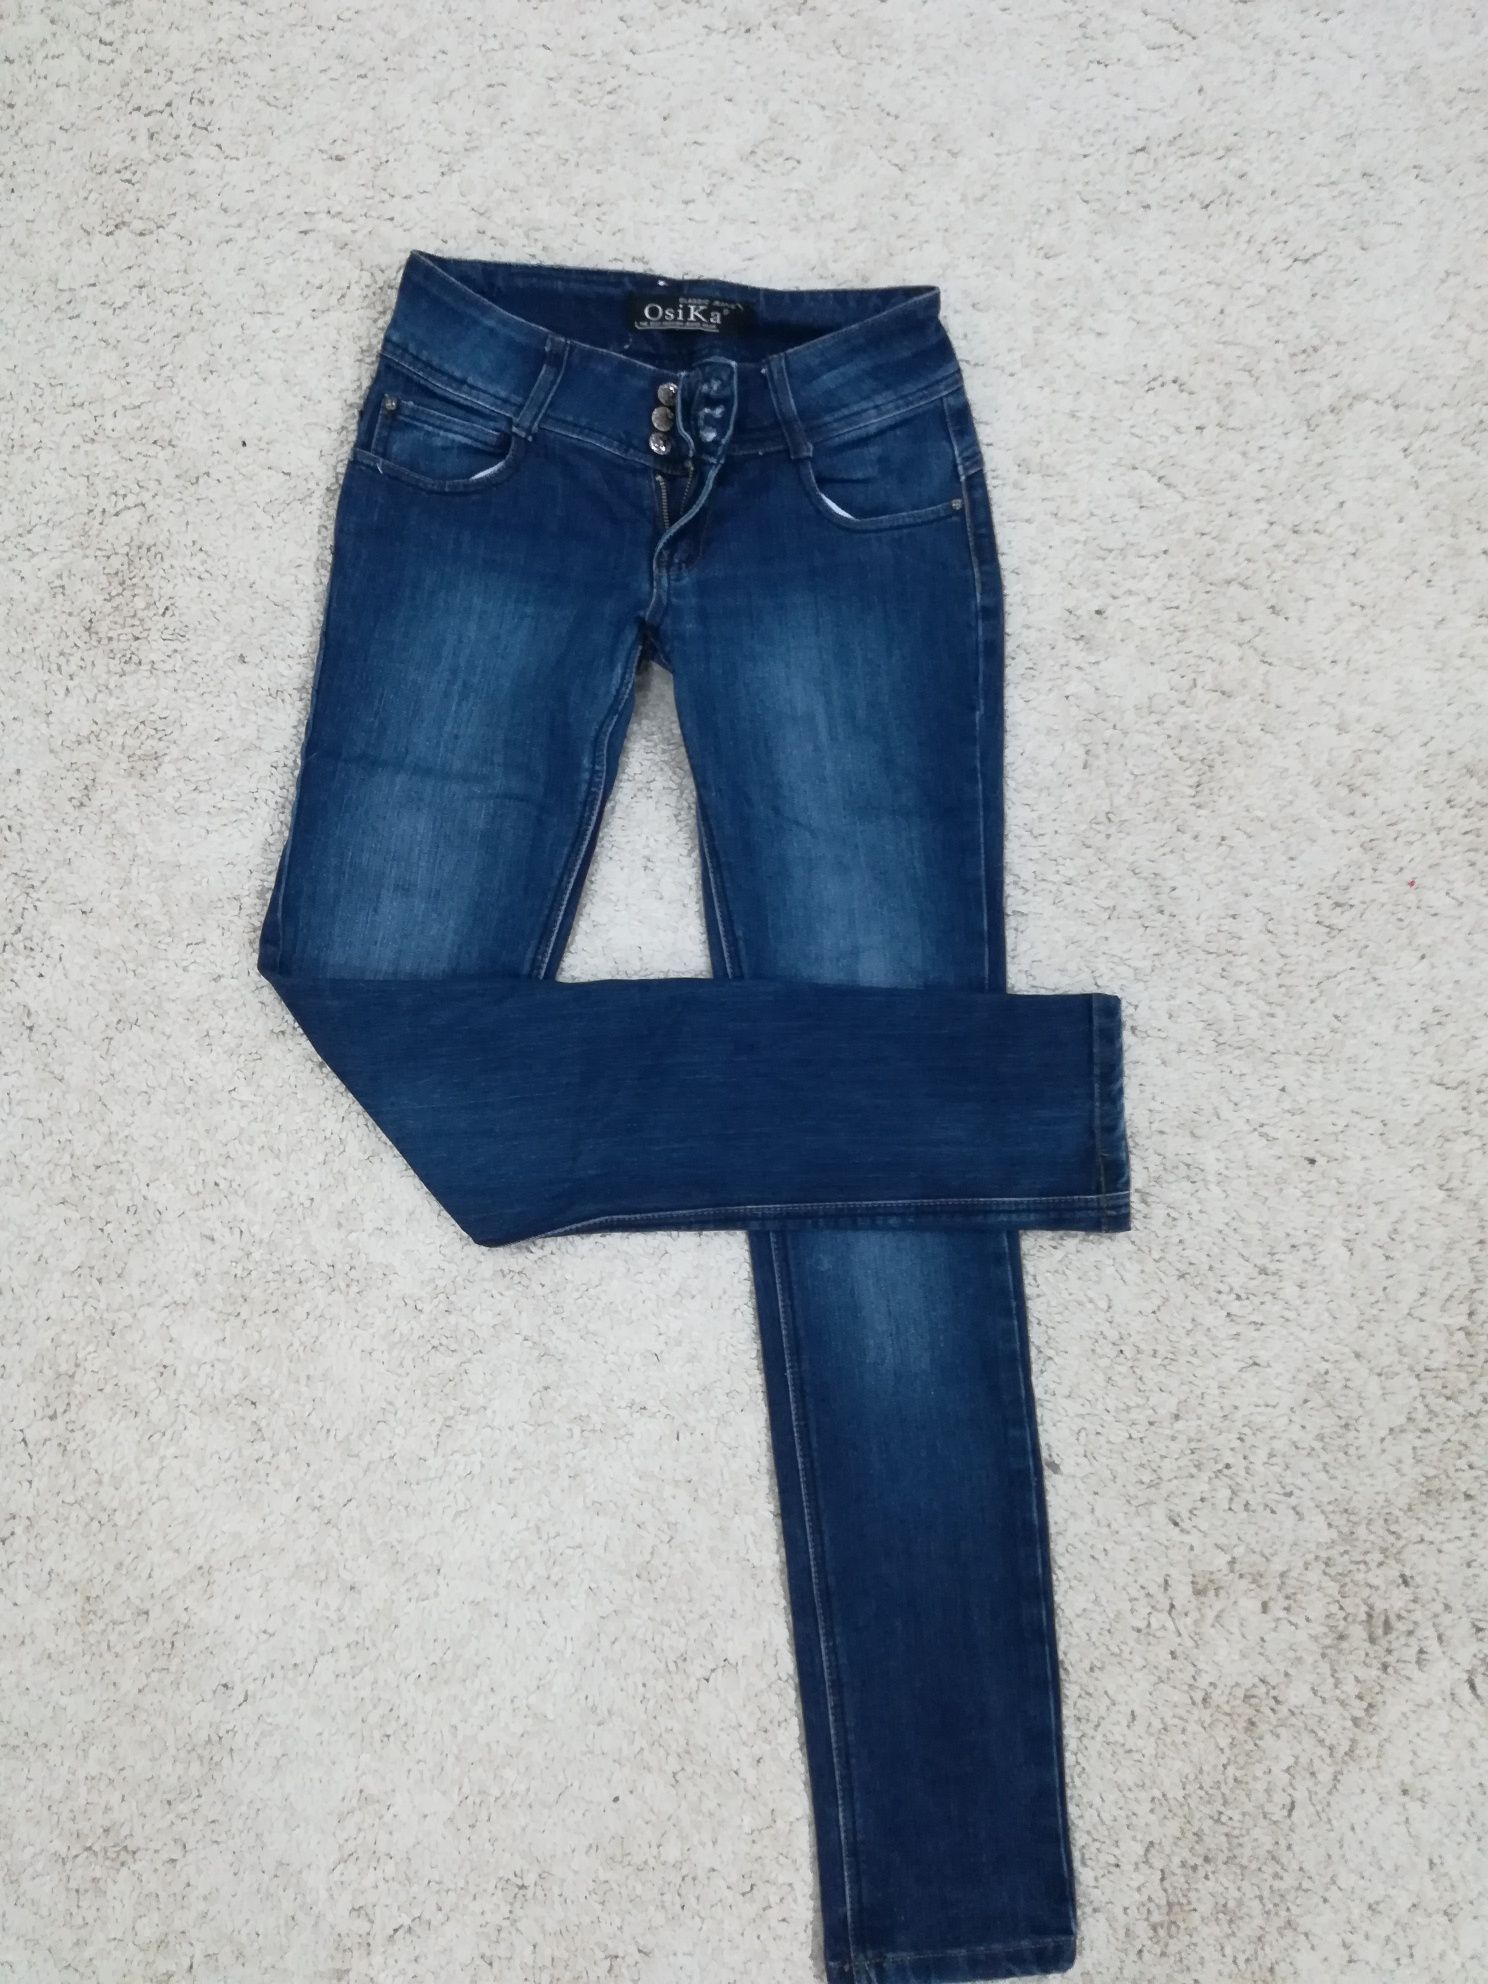 Granatowe przecierane jeansy damskie rozmiar 38 M